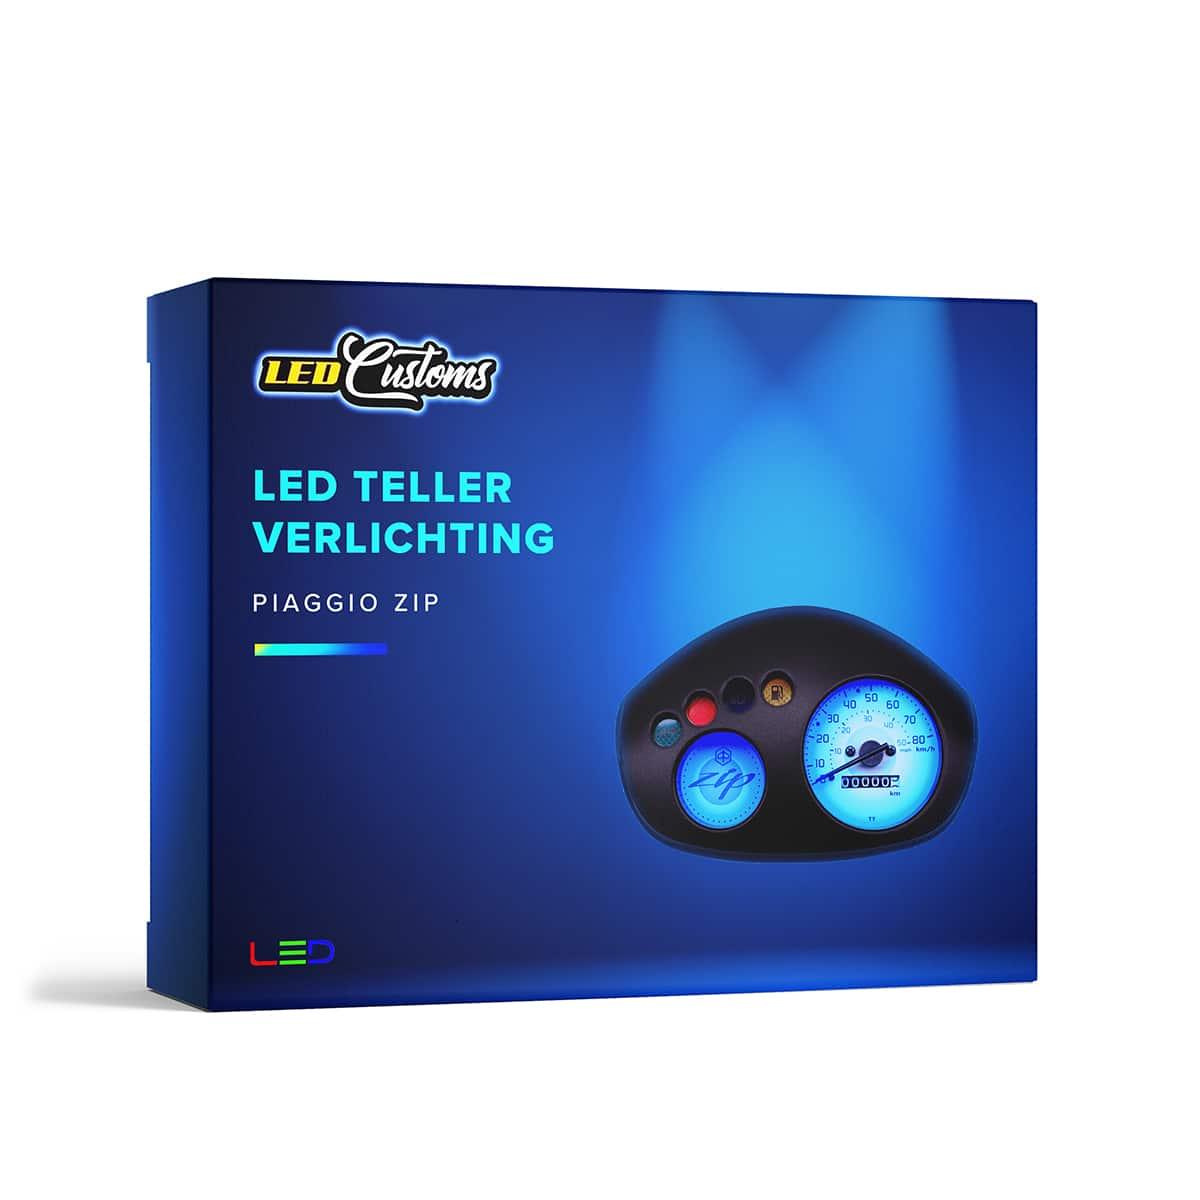 LED Teller Verlichting Piaggio Zip - LED Customs